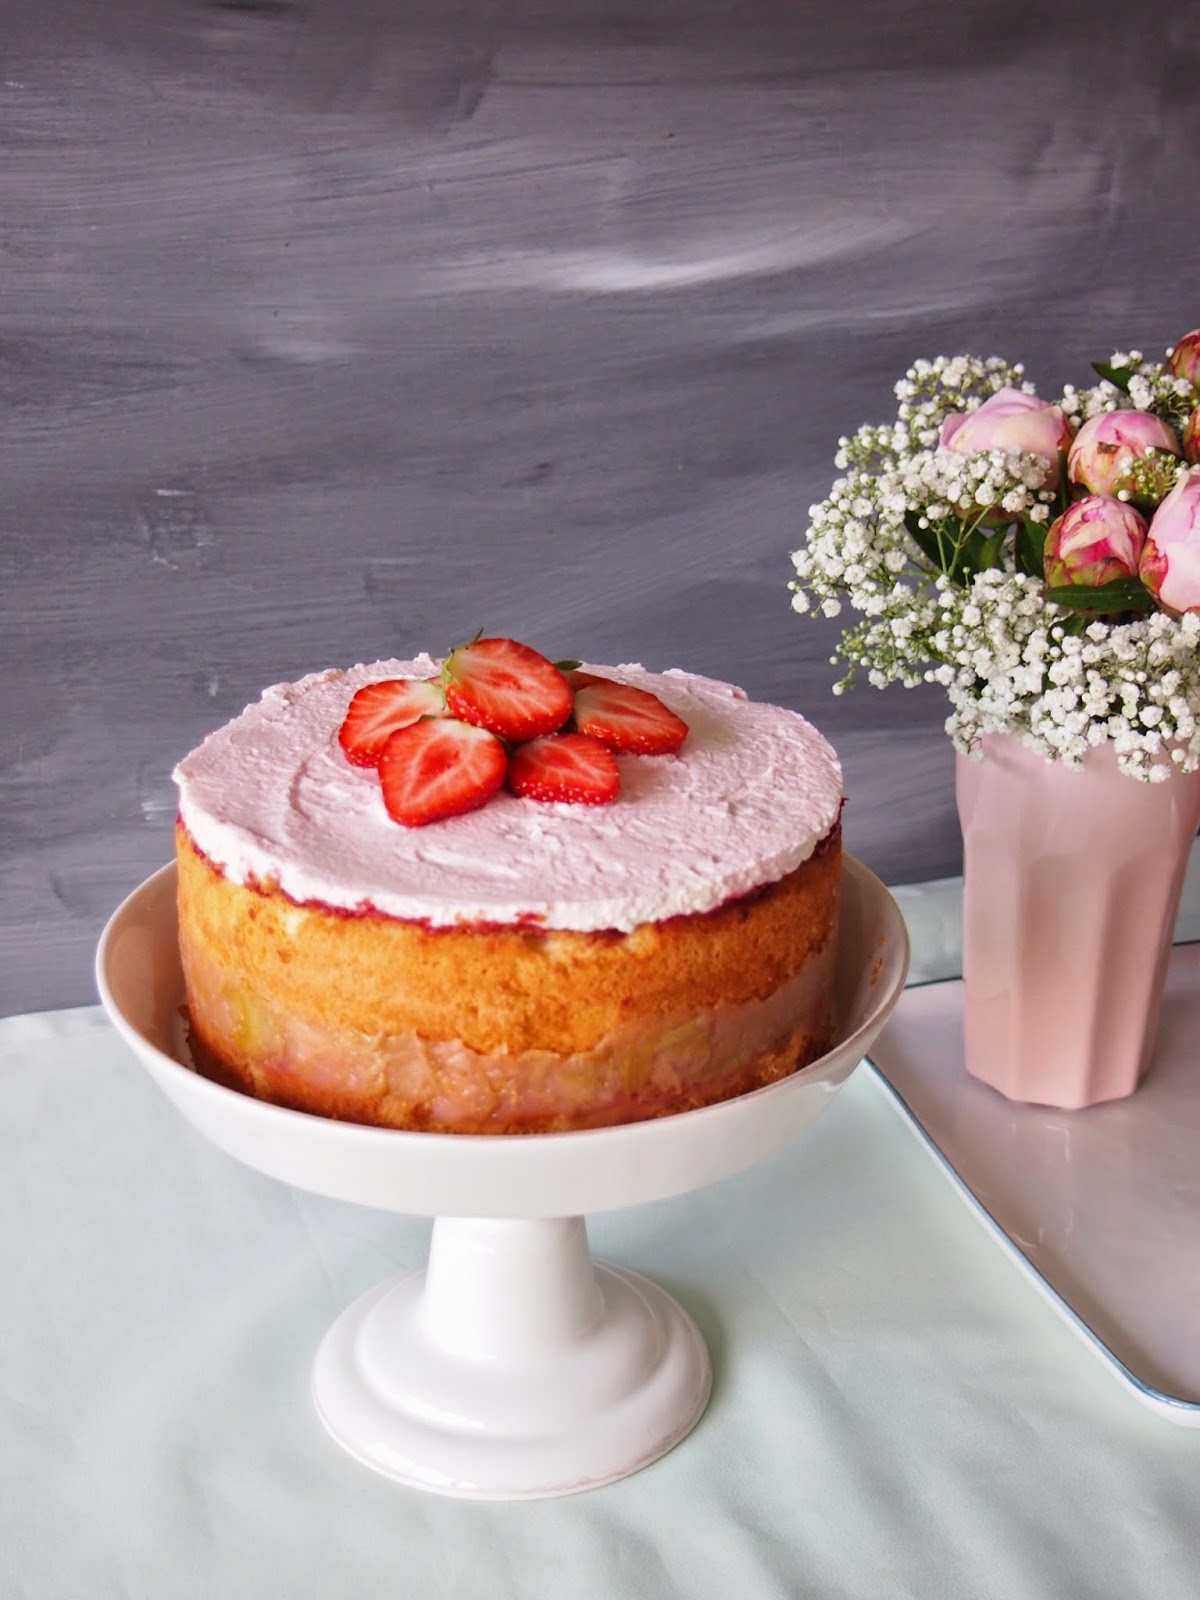 dieZuckerbäckerei: Rhabarber-Prosecco-Erdbeer-Törtchen zum Geburtstag